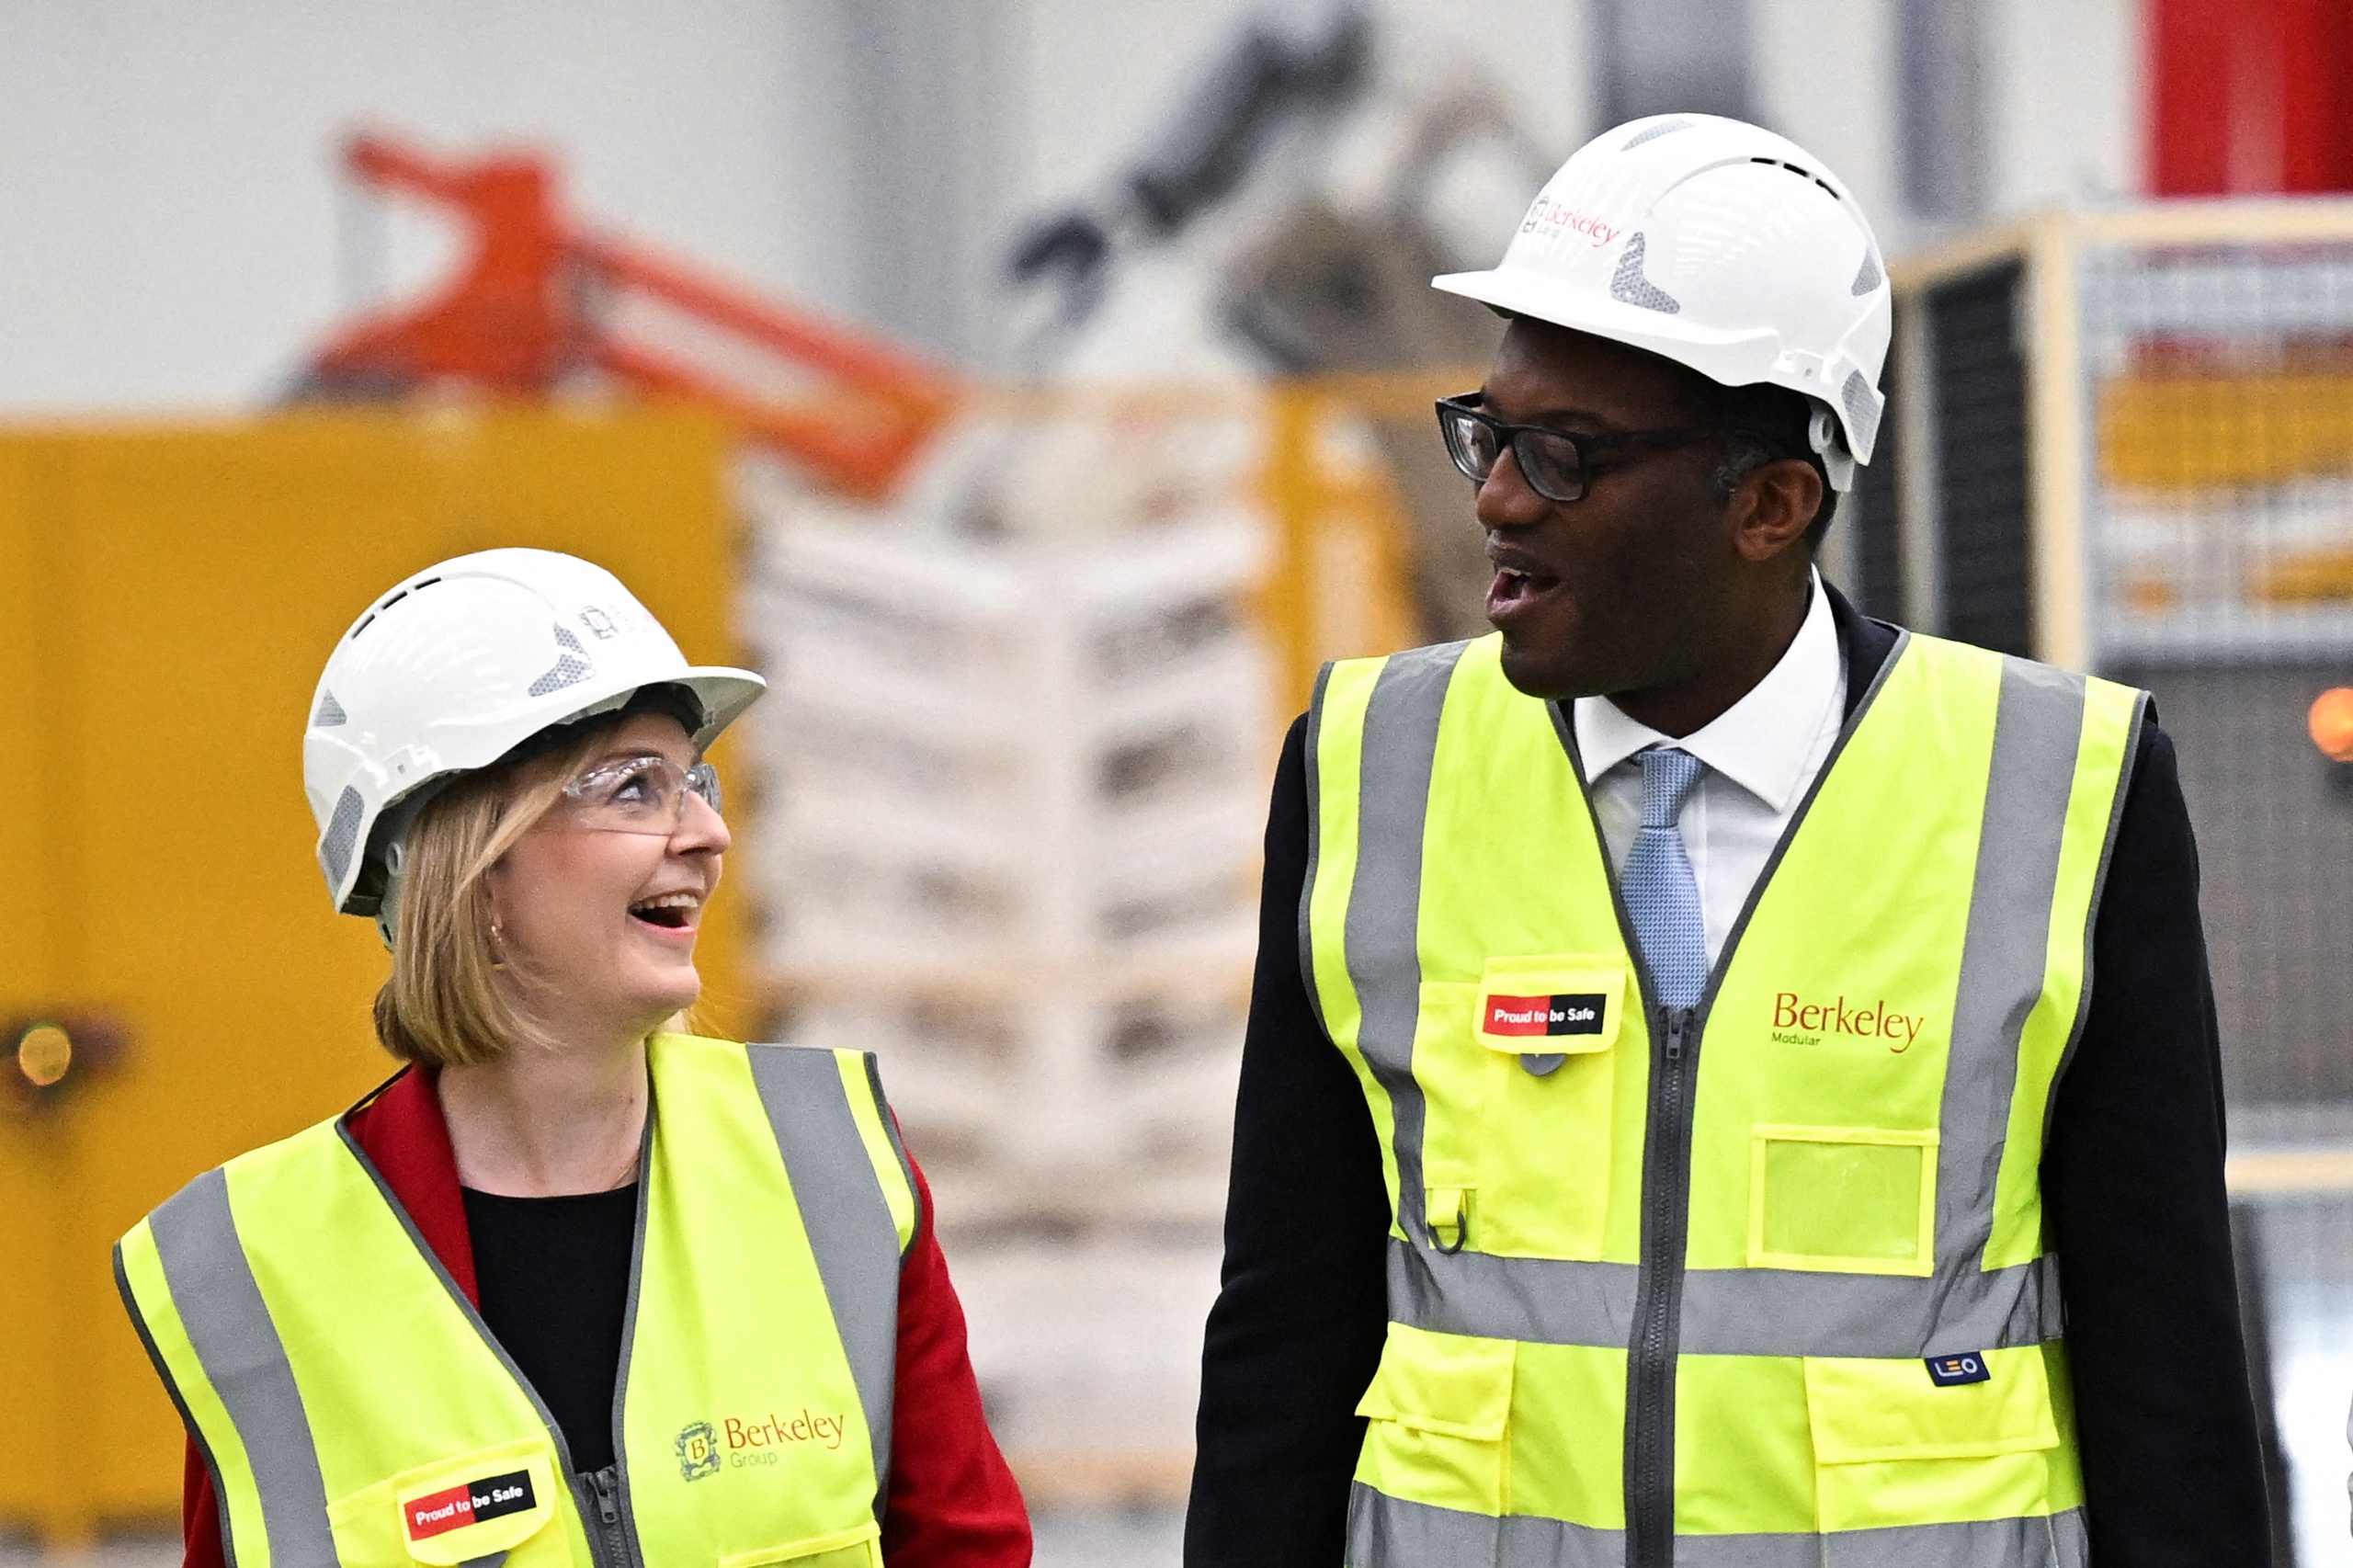 Premier Liz Truss en haar minister van Financien Kwasi Kwarteng. Zowelin het binnenland als daarbuiten is er vee kritiek op de plannen van de Britse regering om de economie vlot te trekken en de inflatie te bestrijden met belastingverlichting voor de rijken. 